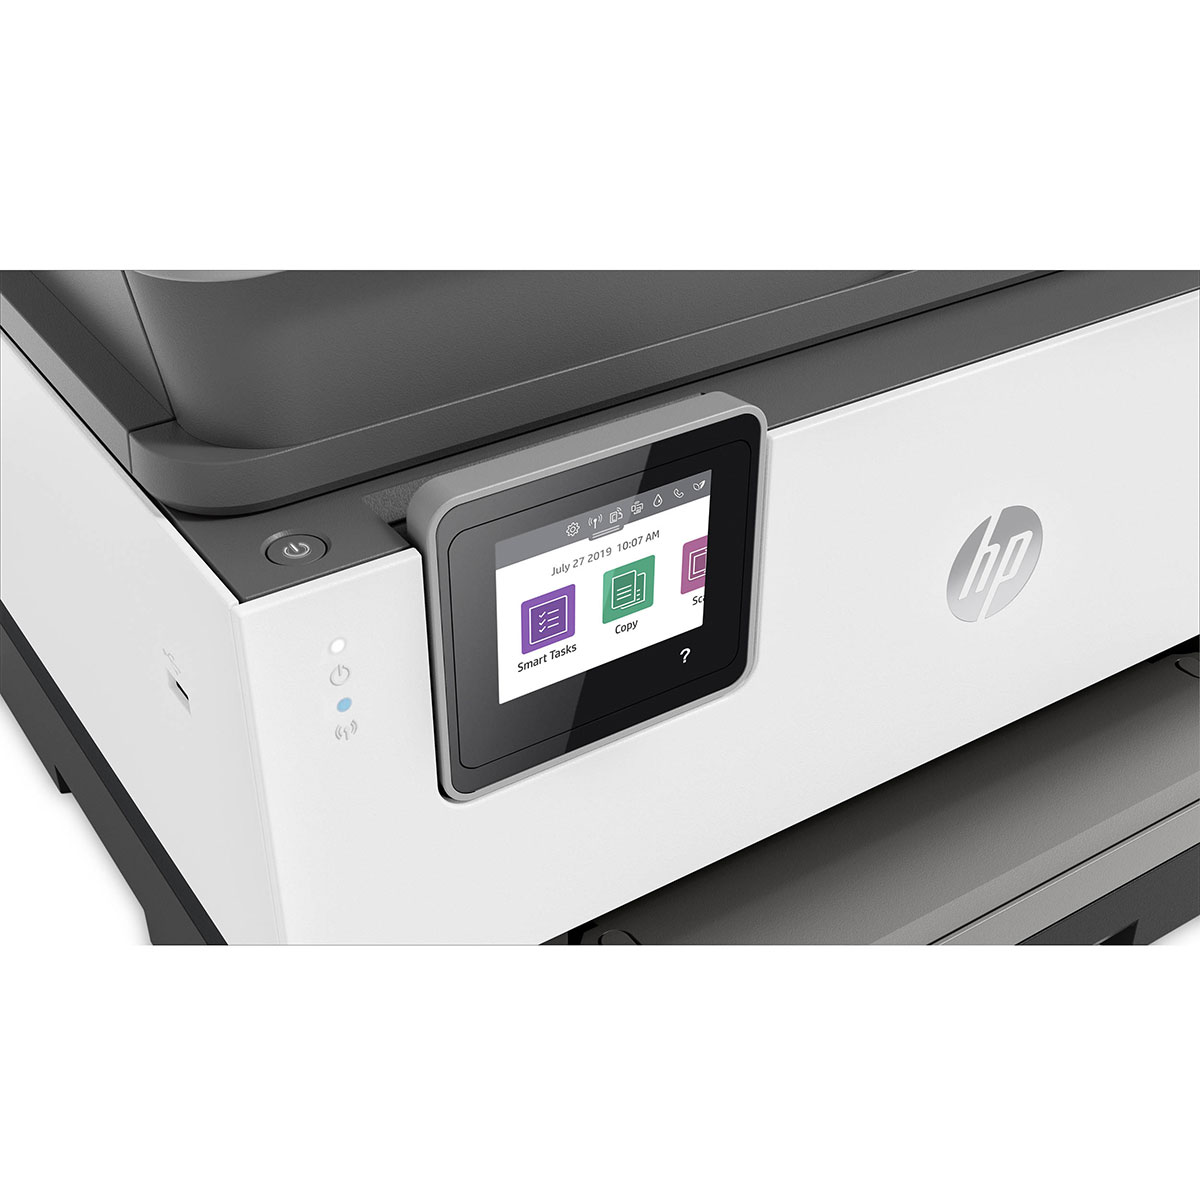  HP OfficeJet Pro 9010 All-in-One Wireless Printer